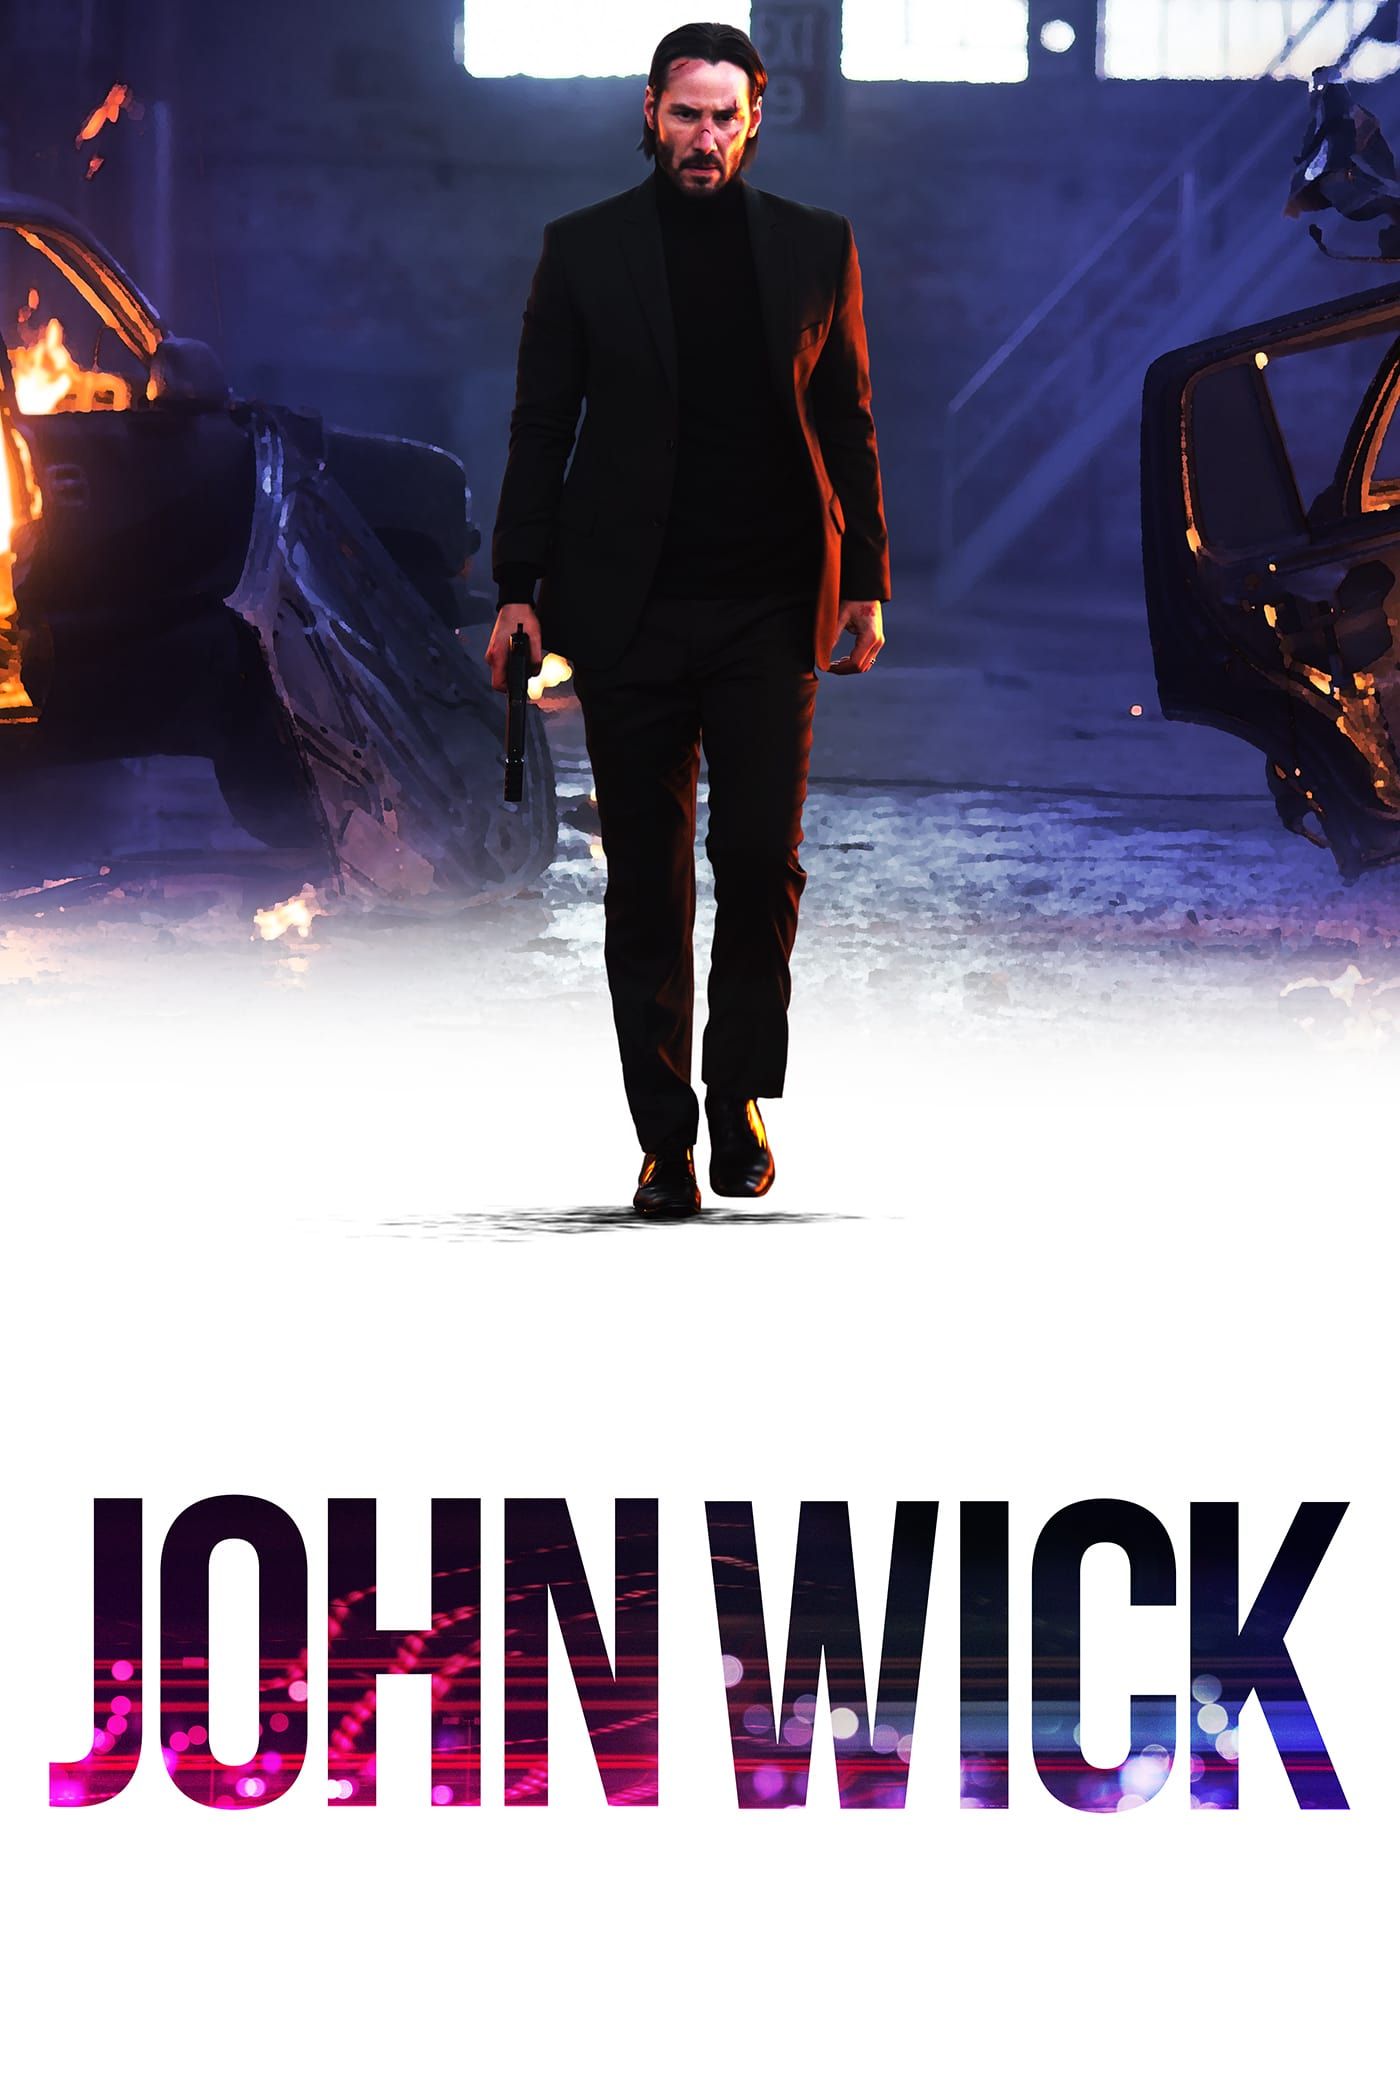 download john wick 3 sub indo mp4